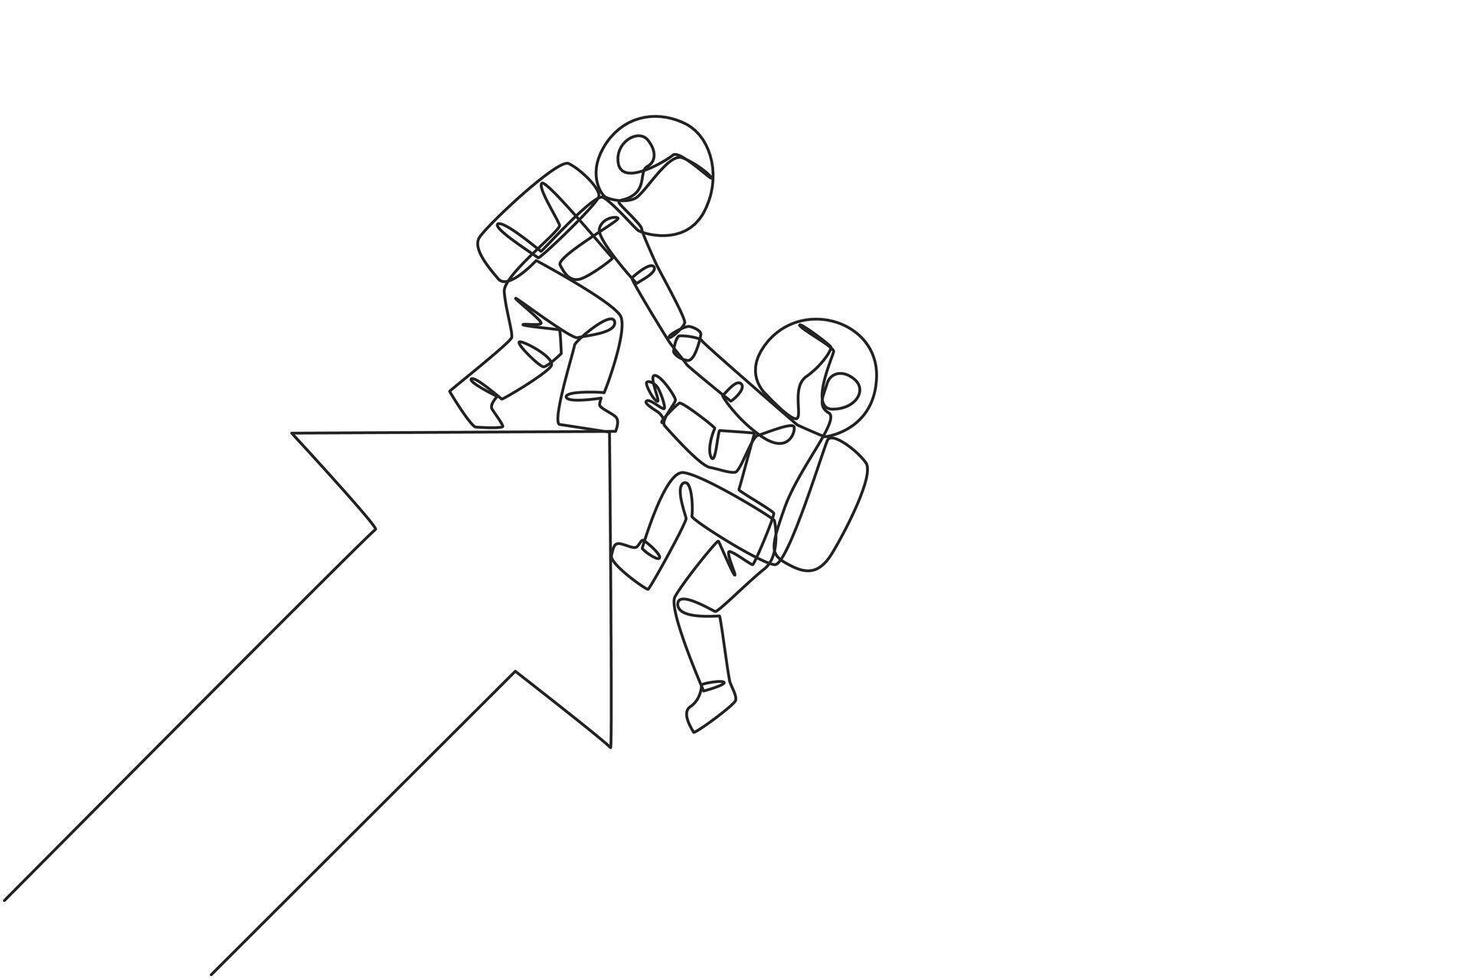 Single kontinuierlich Linie Zeichnung Astronaut hilft Kollege steigen das groß steigend Pfeil Symbol. kompakt Zusammenarbeit. positiv bewirken auf Unternehmen. Komplett Arbeit korrekt. einer Linie Design Illustration vektor